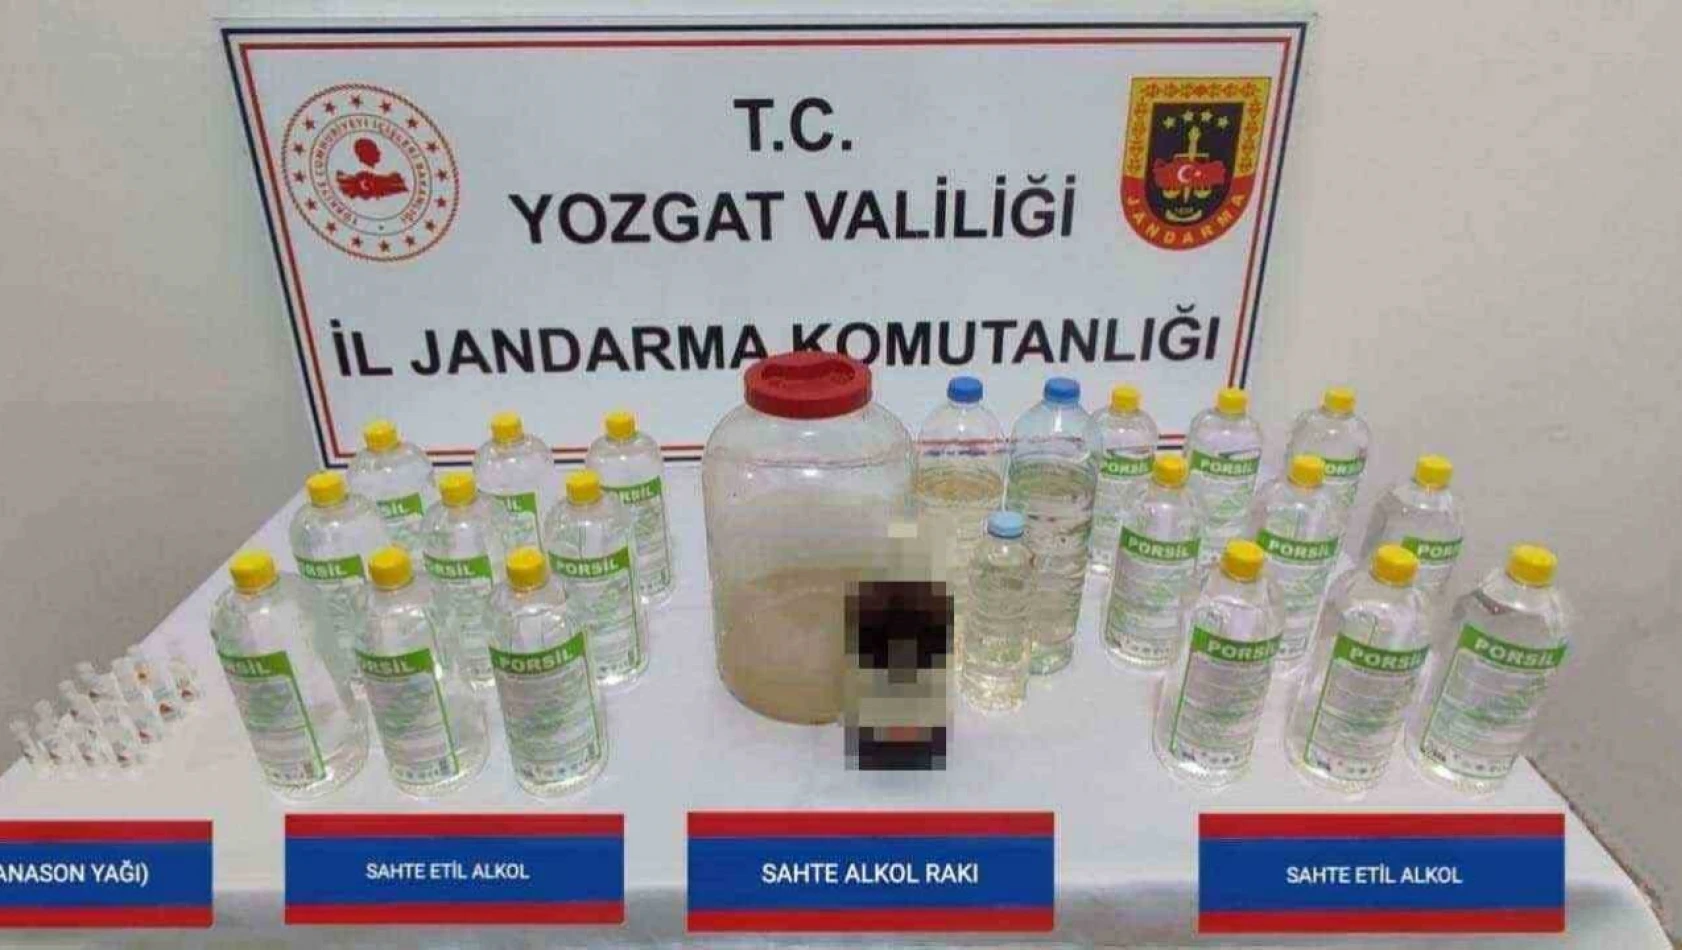 Yozgat'ta Sahte İçki Operasyonu! - 1 Gözaltı Var